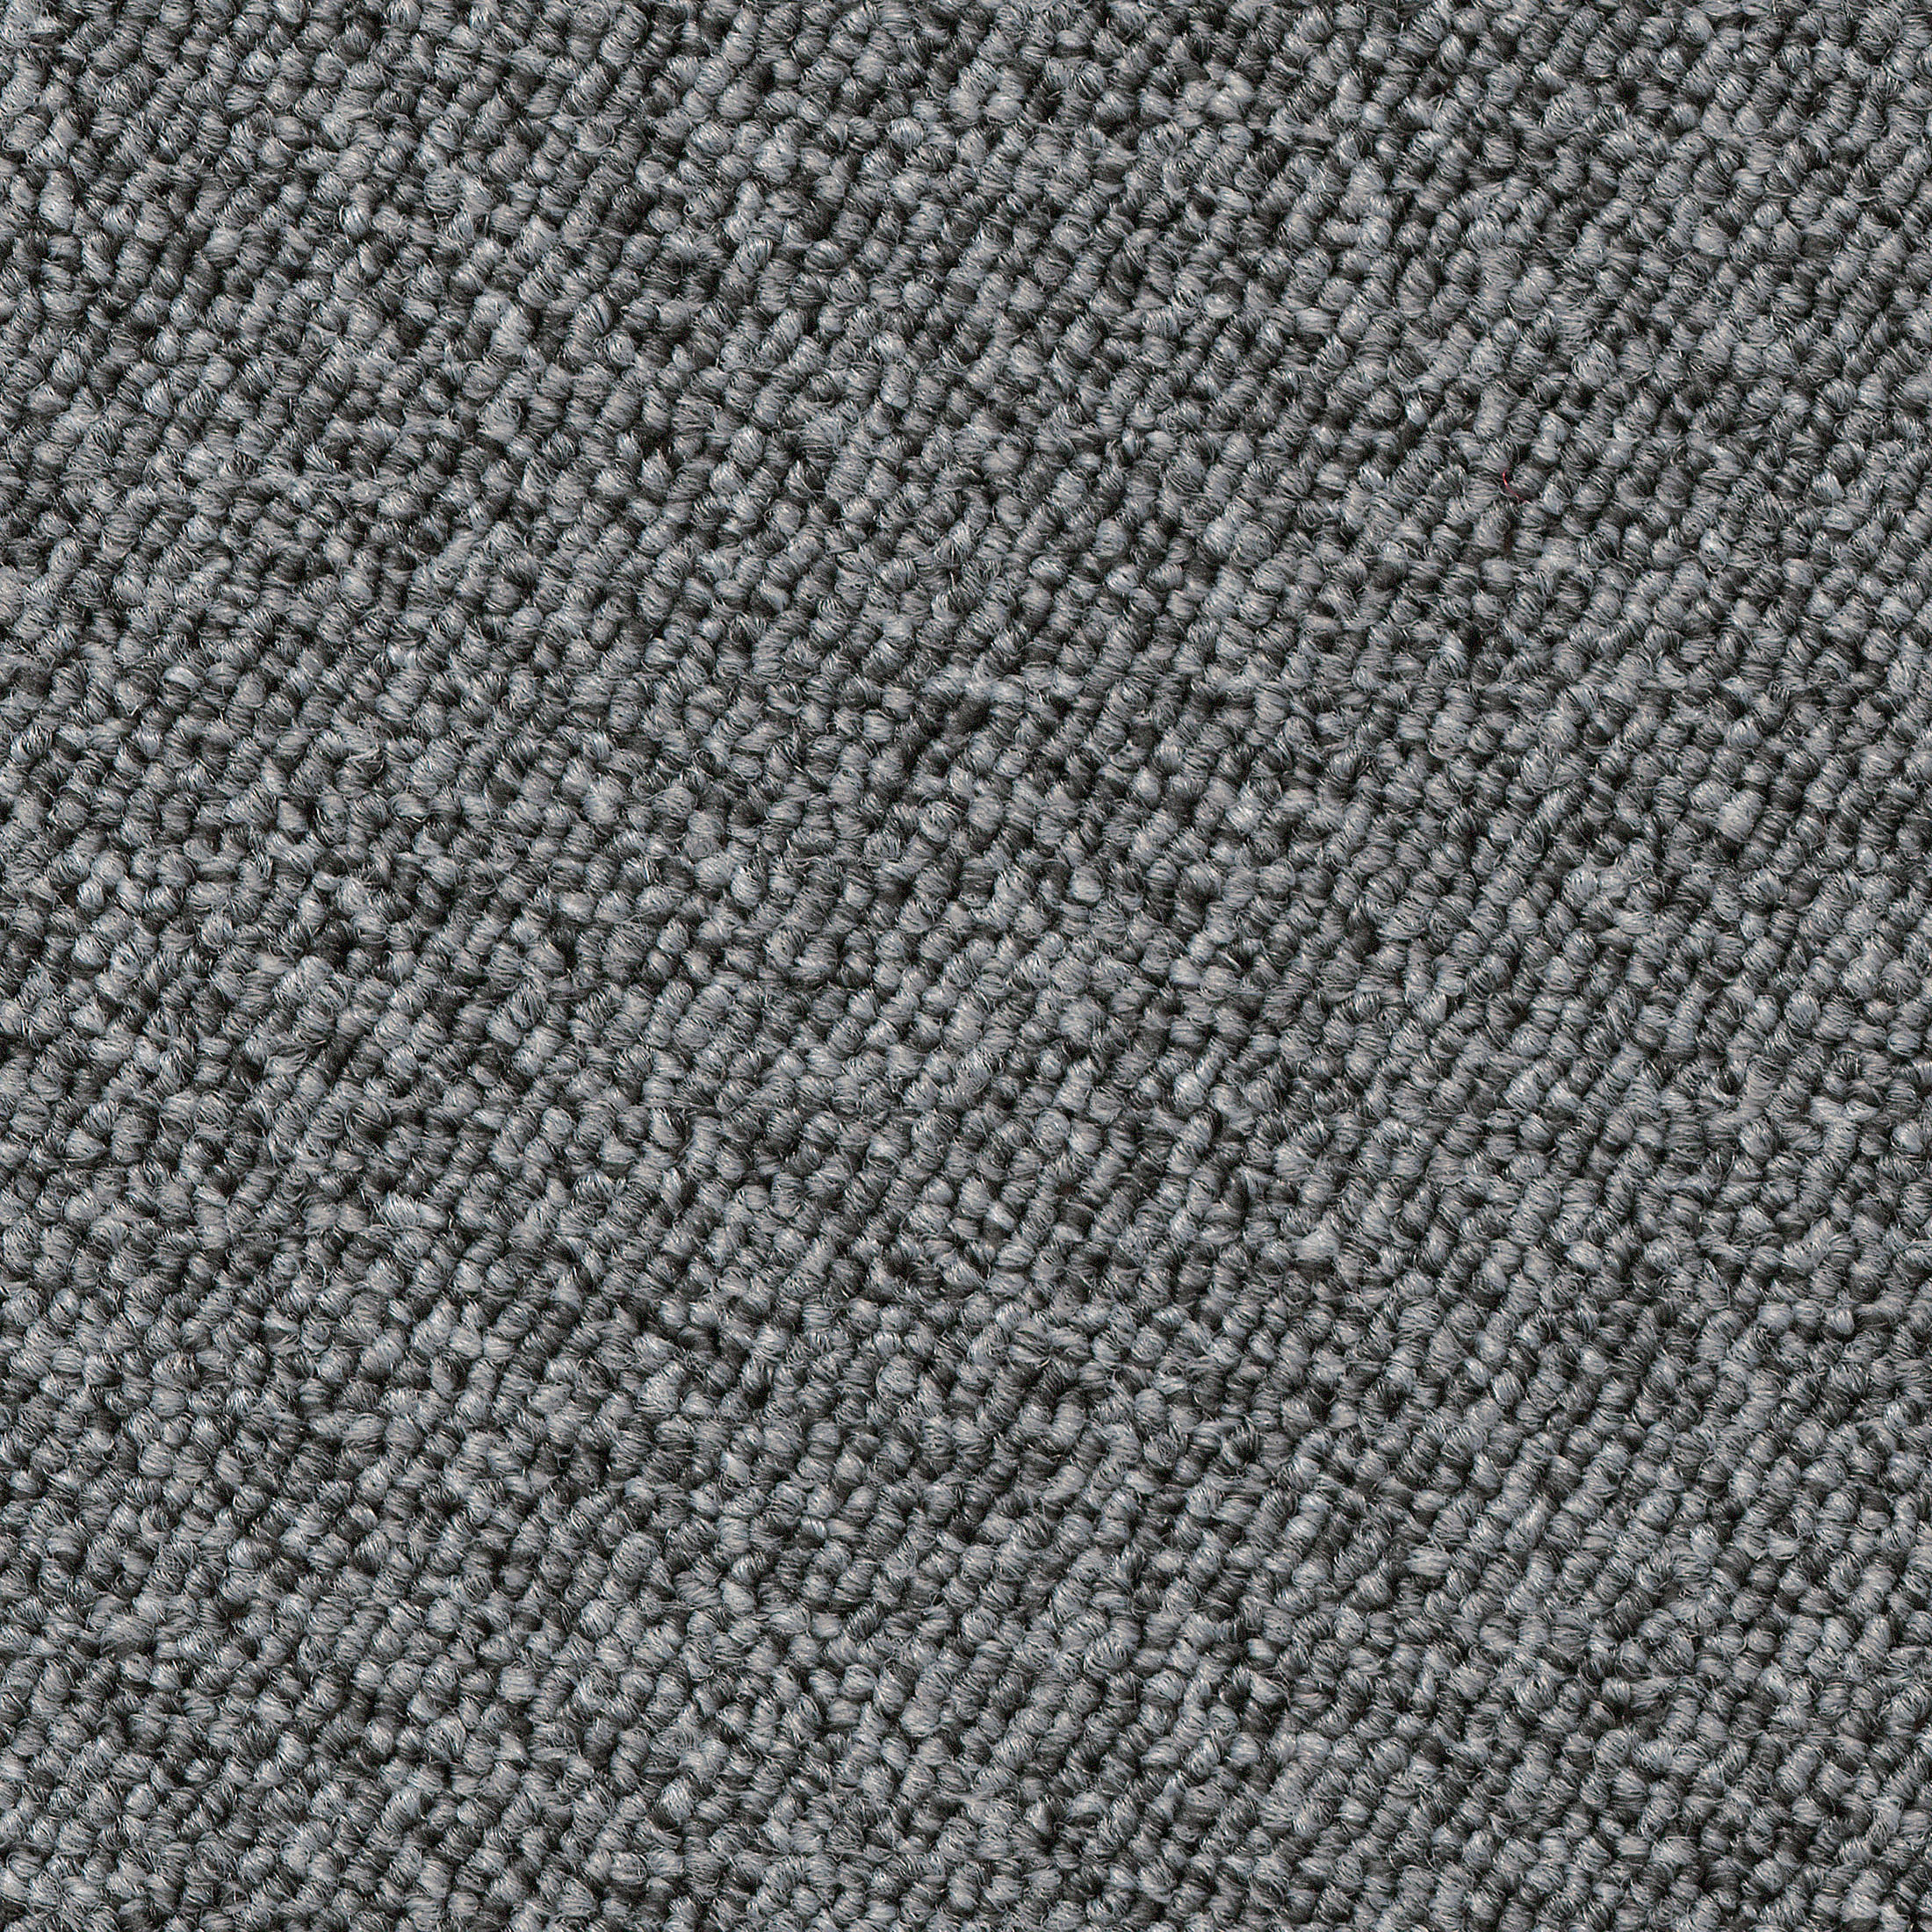 Schlingen-Teppichboden Optimal in von Grau Kibek -